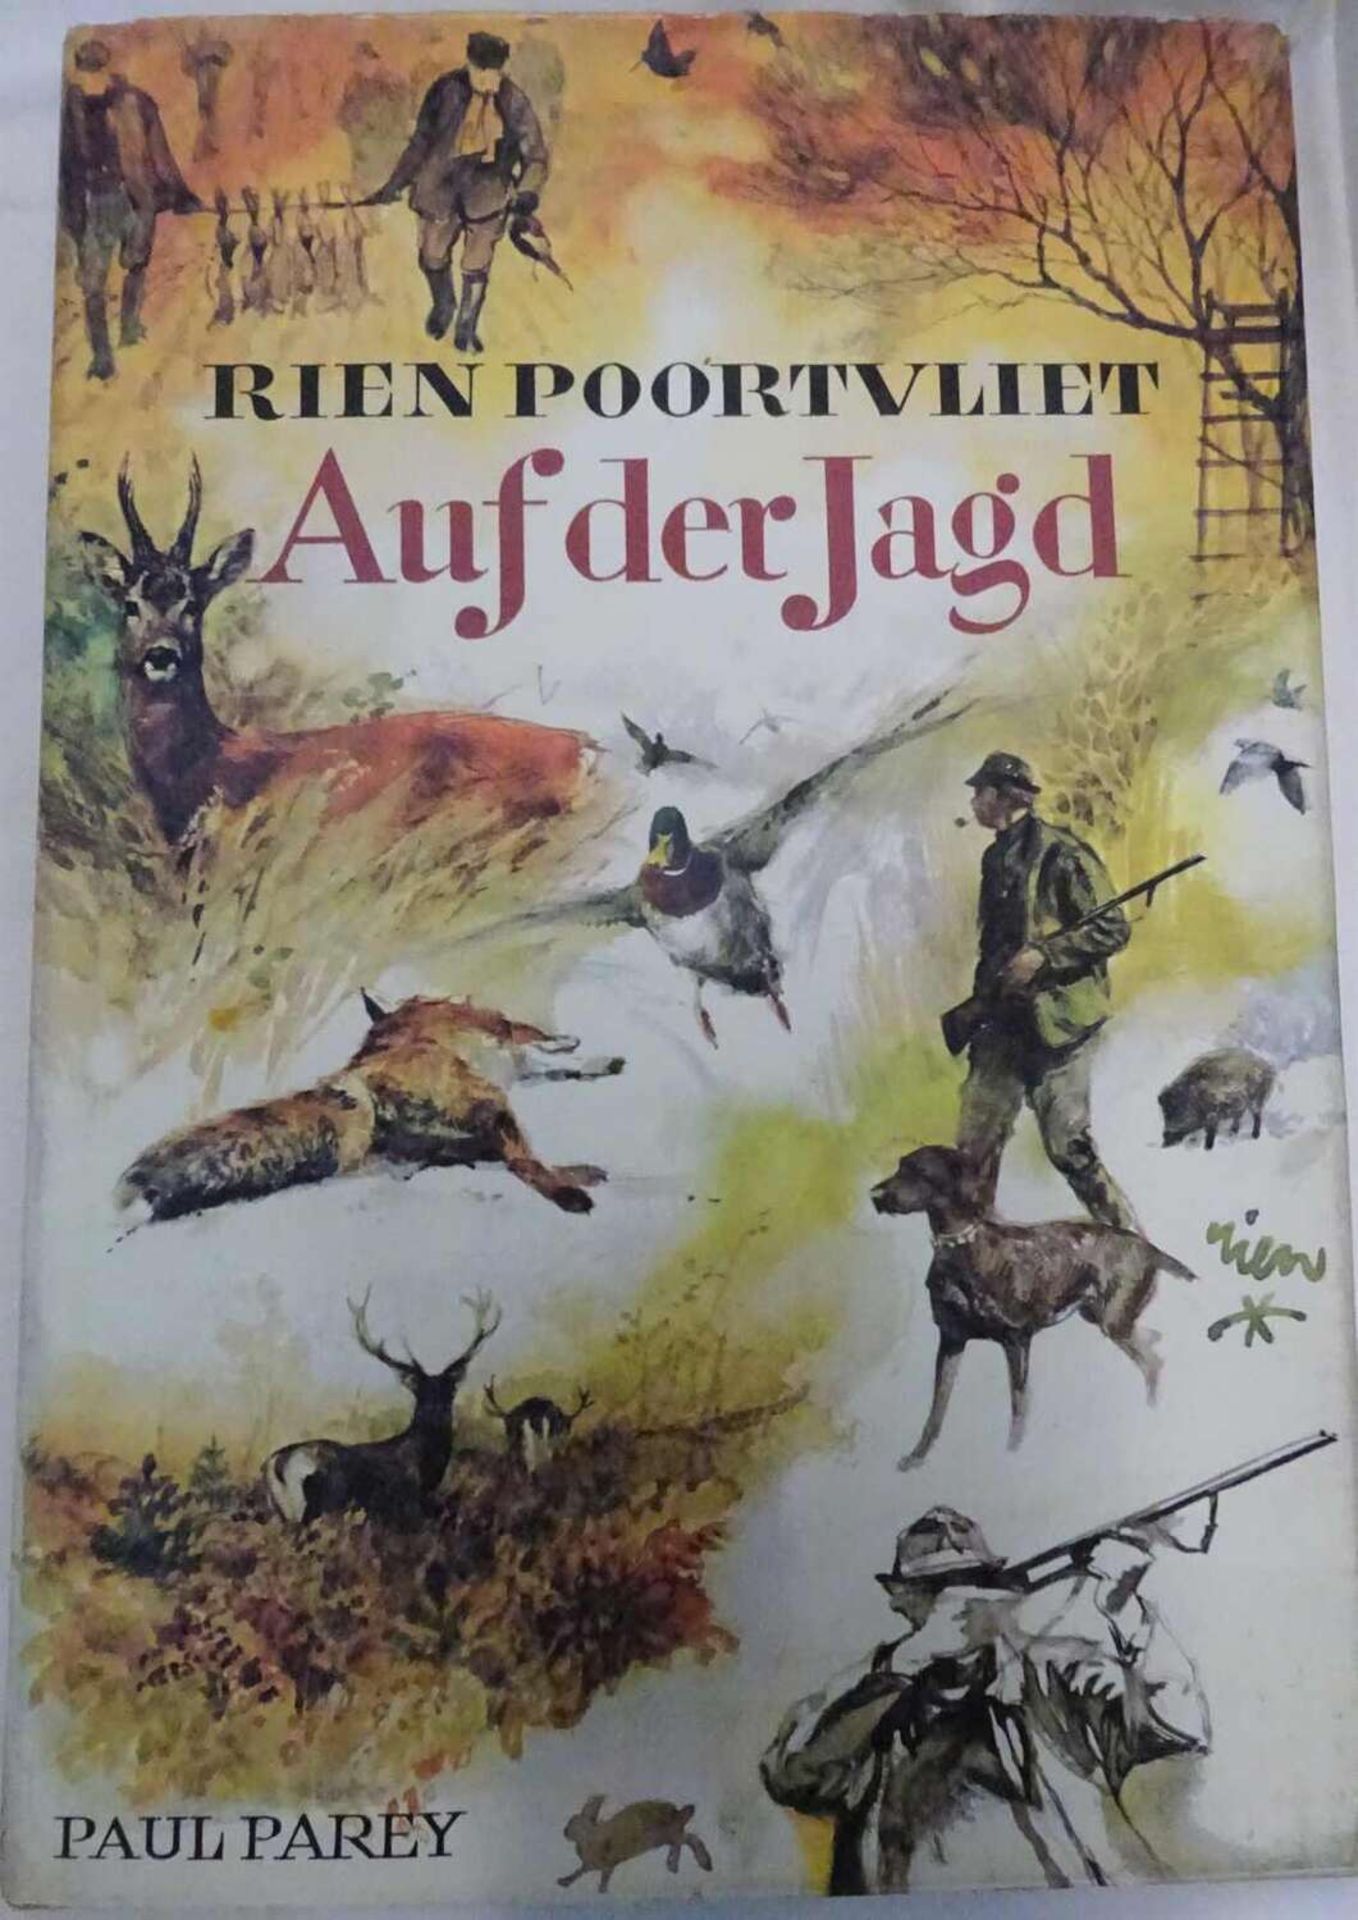 Paul Parey - Rien Poortvliet - Auf der Jagd. Ein Skizzenbuch. 1972Paul Parey - Rien Poortvliet - On